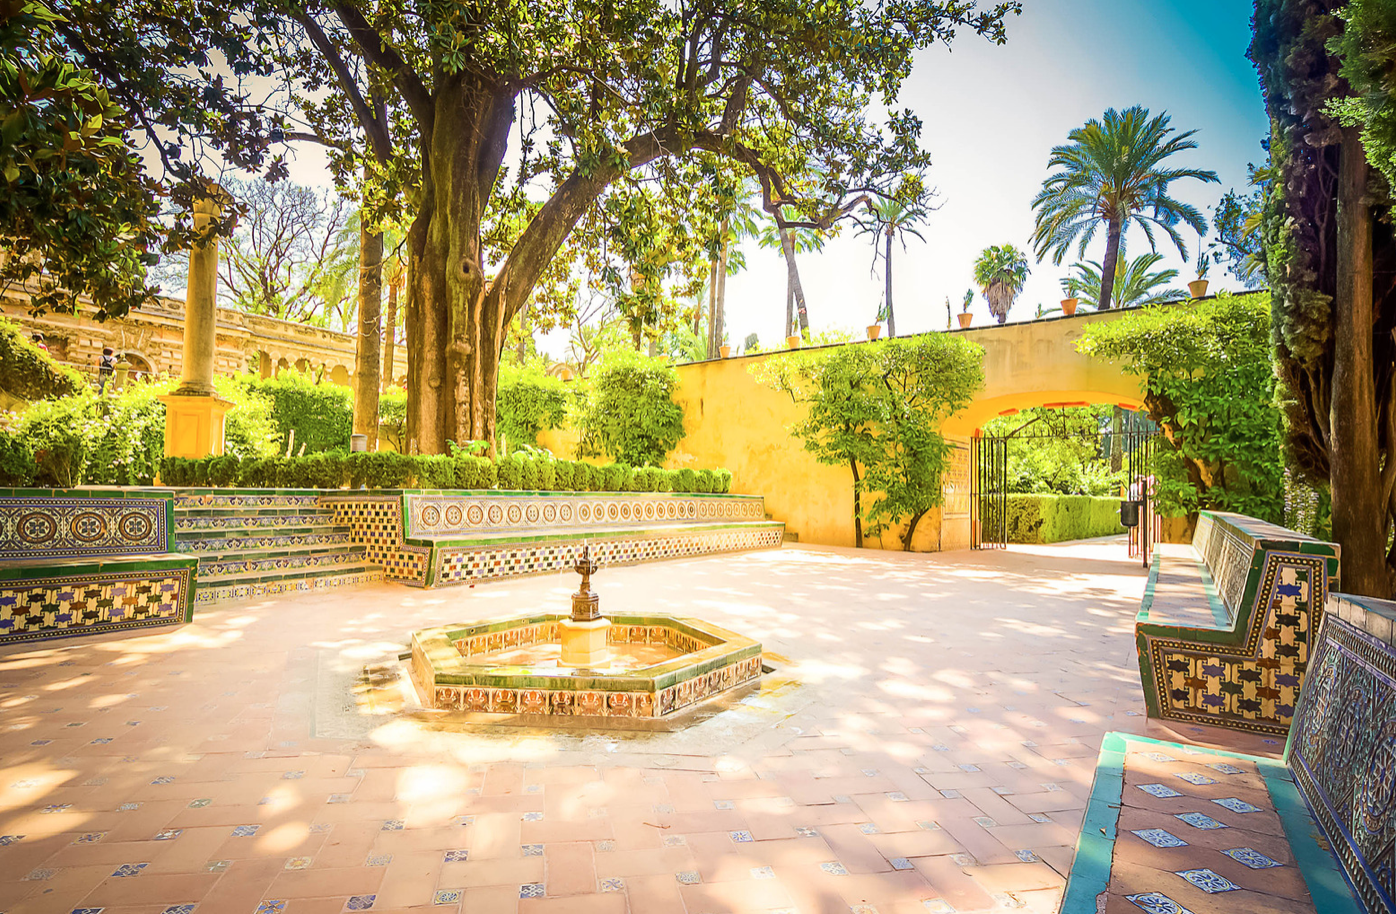 Alcazar Gardens, Seville